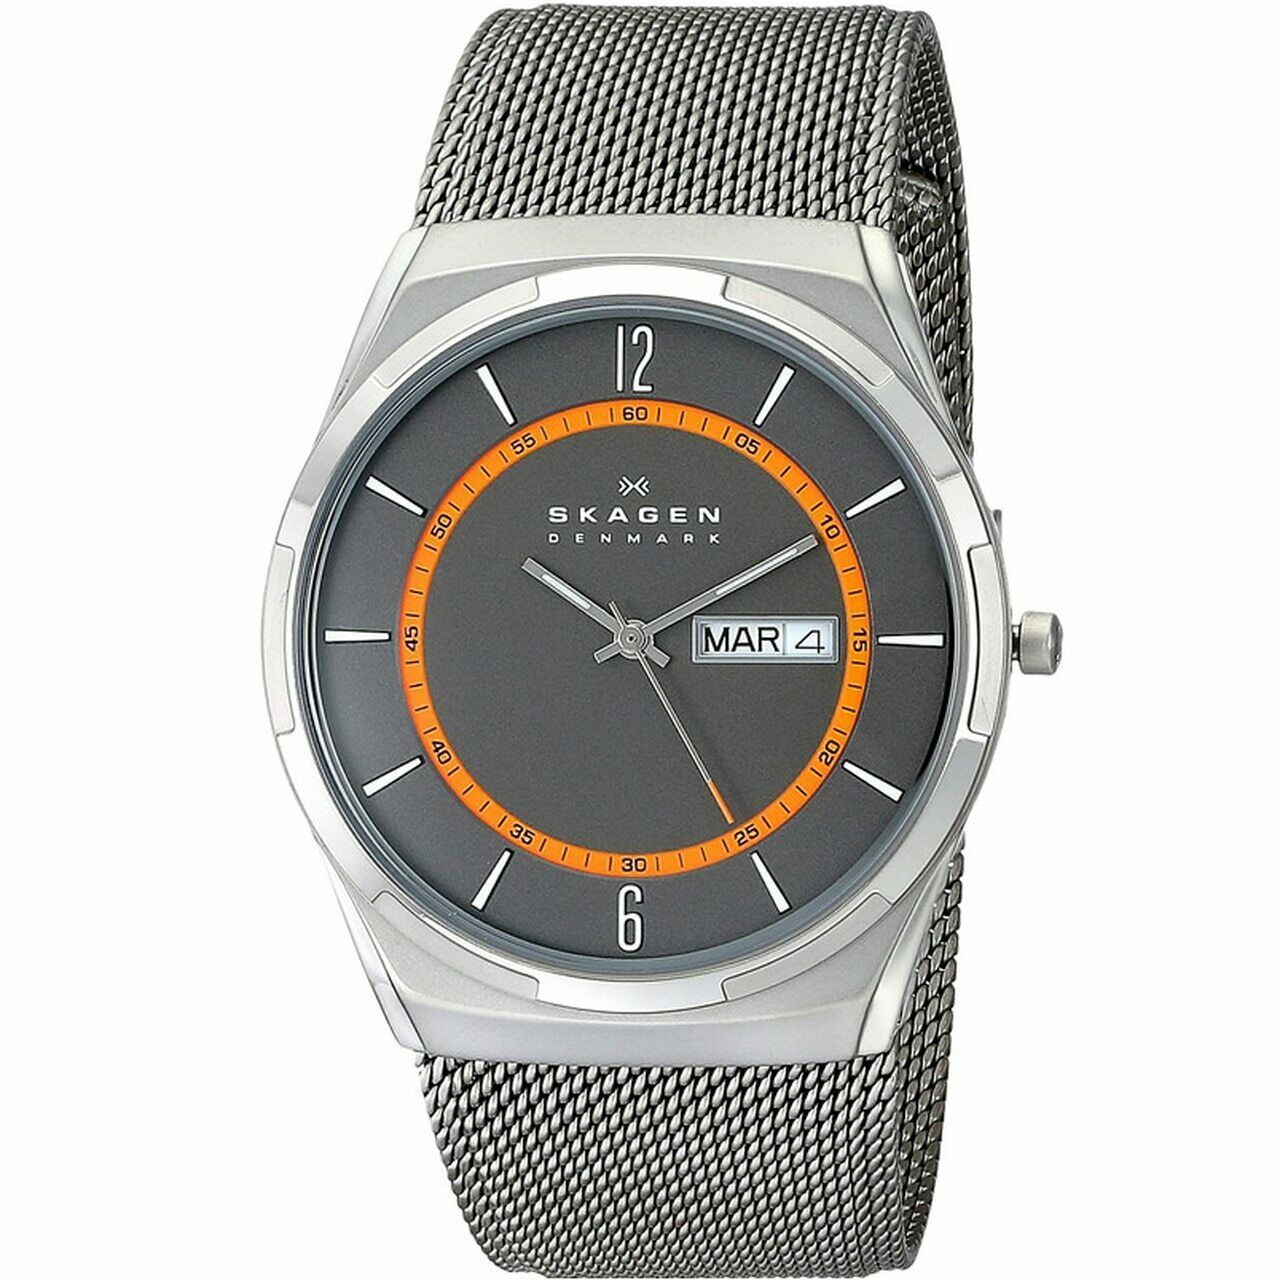 Skagen Men's Analog Quartz Watch with Stainless Steel Strap SKW6007